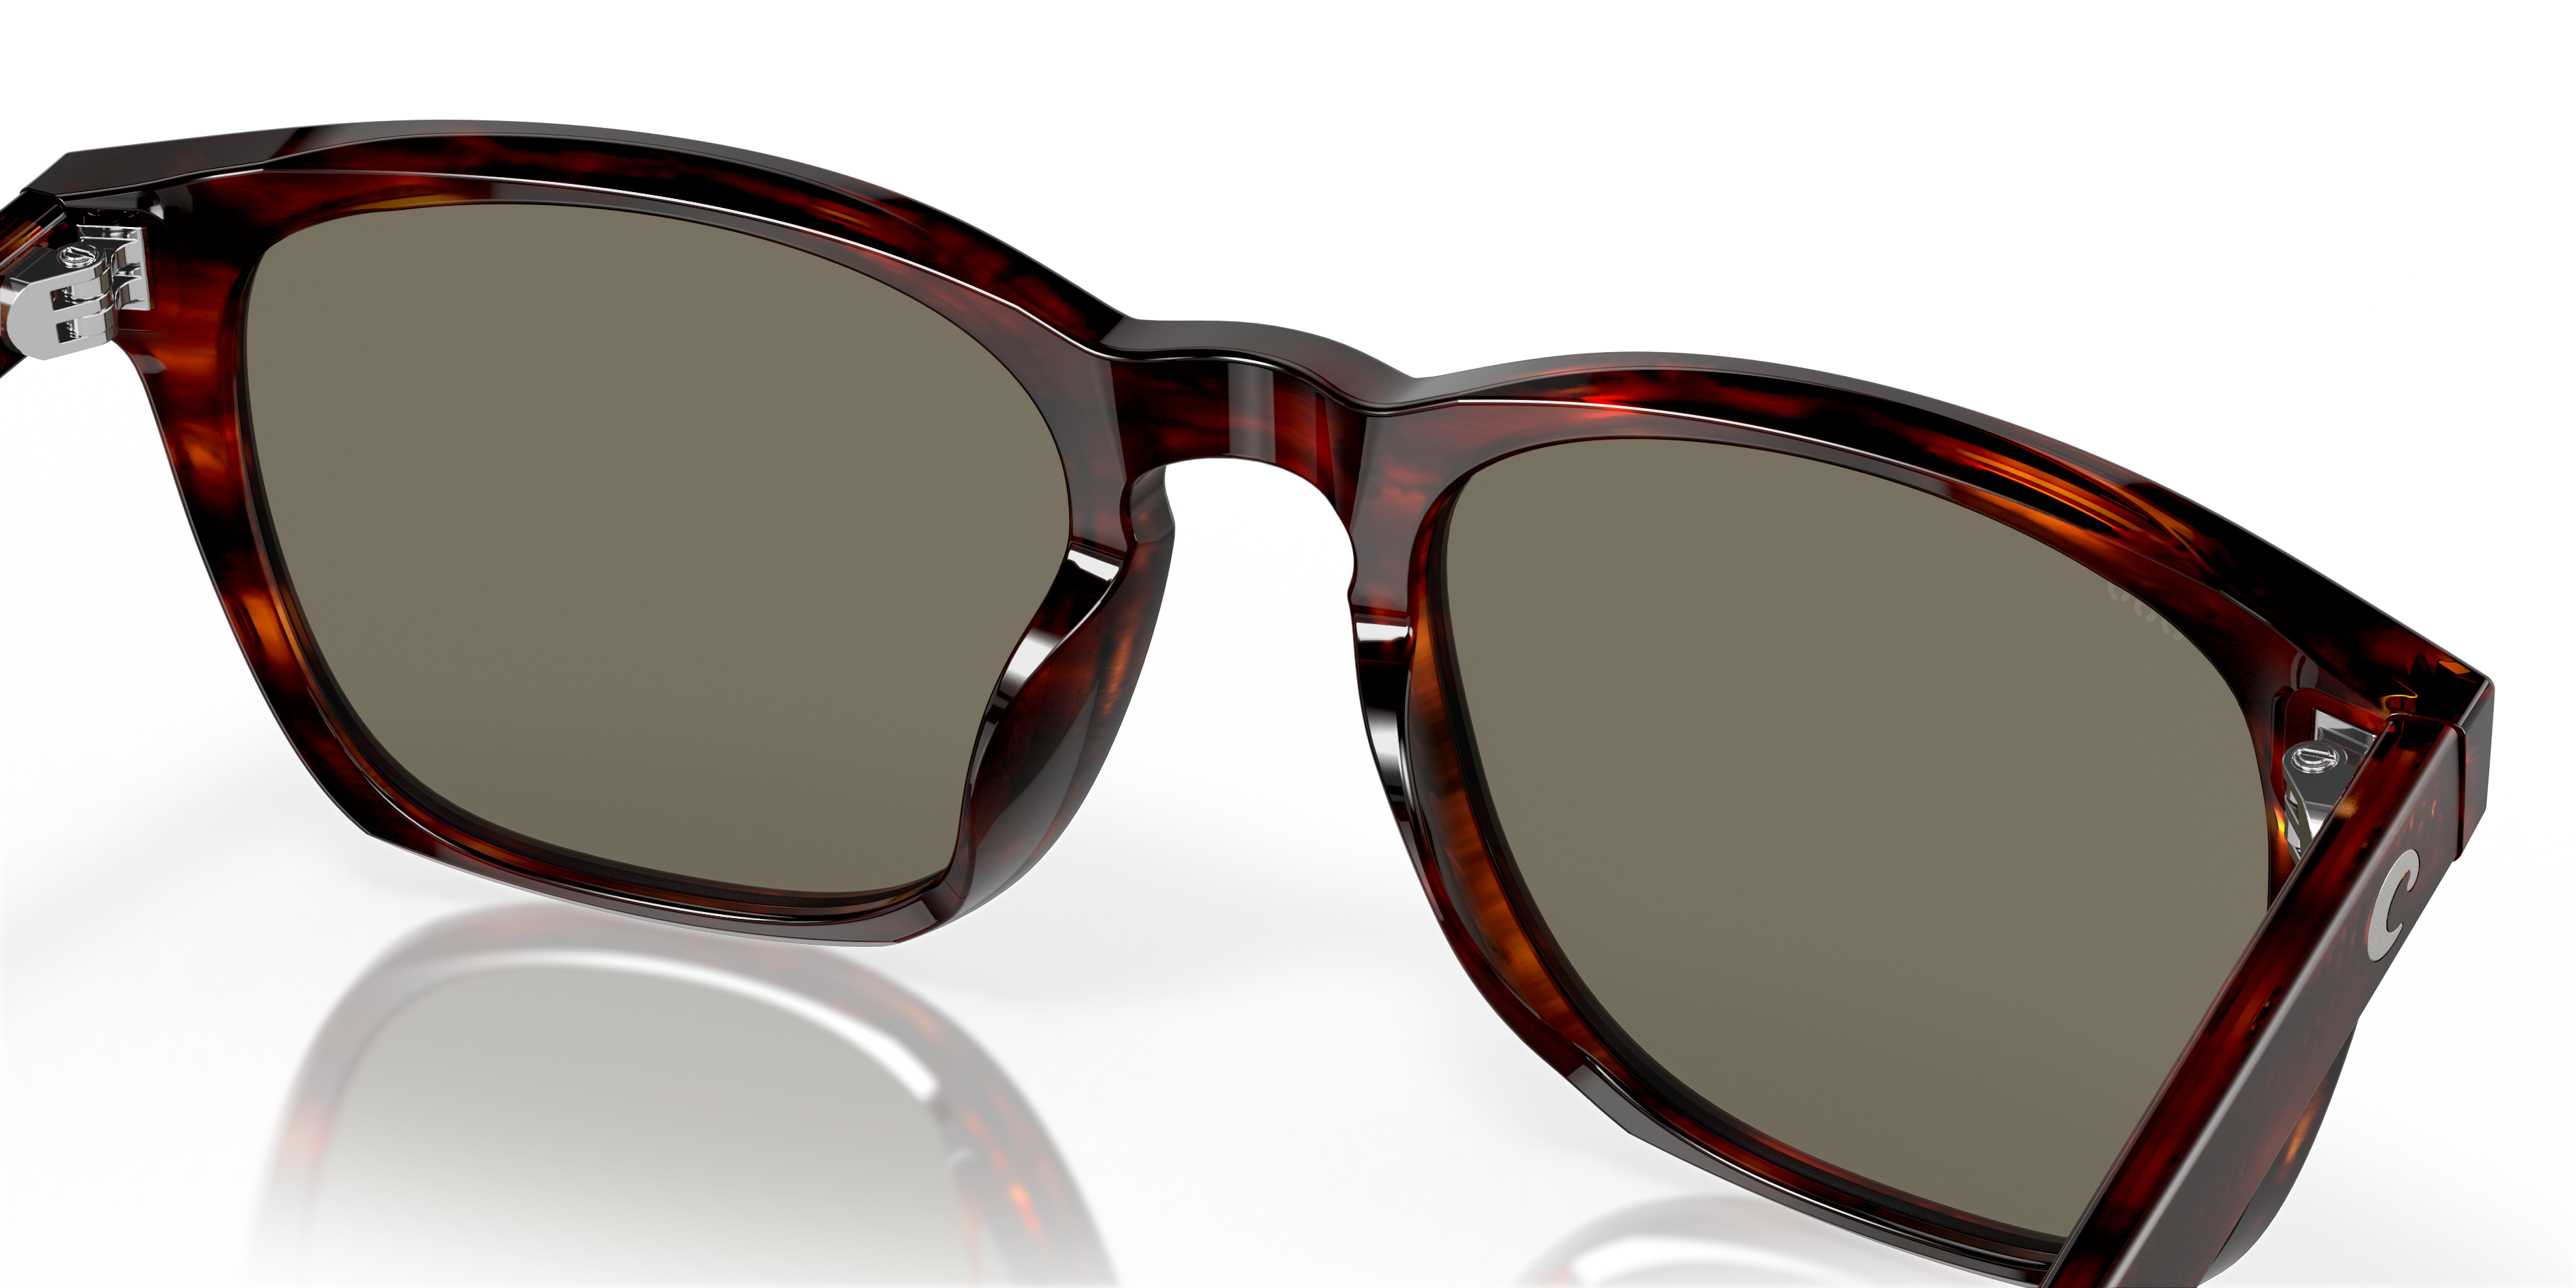 Sullivan Polarized Sunglasses in Blue Mirror | Costa Del Mar®